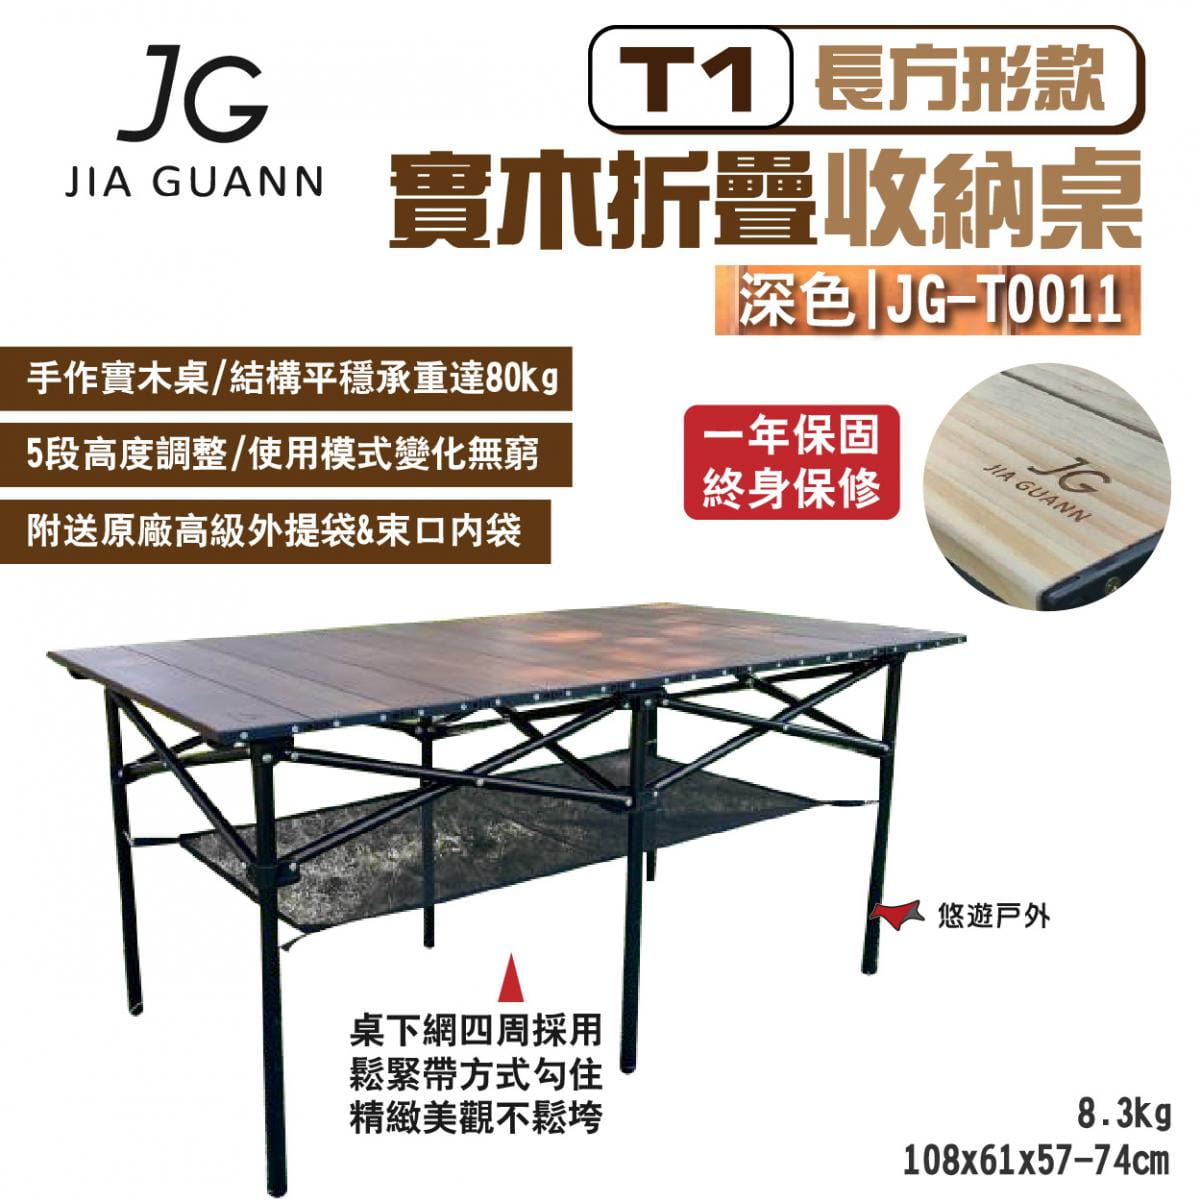 【JG Outdoor】T1實木折疊收納桌-長方形款 深色 JG-T0011 悠遊戶外 1